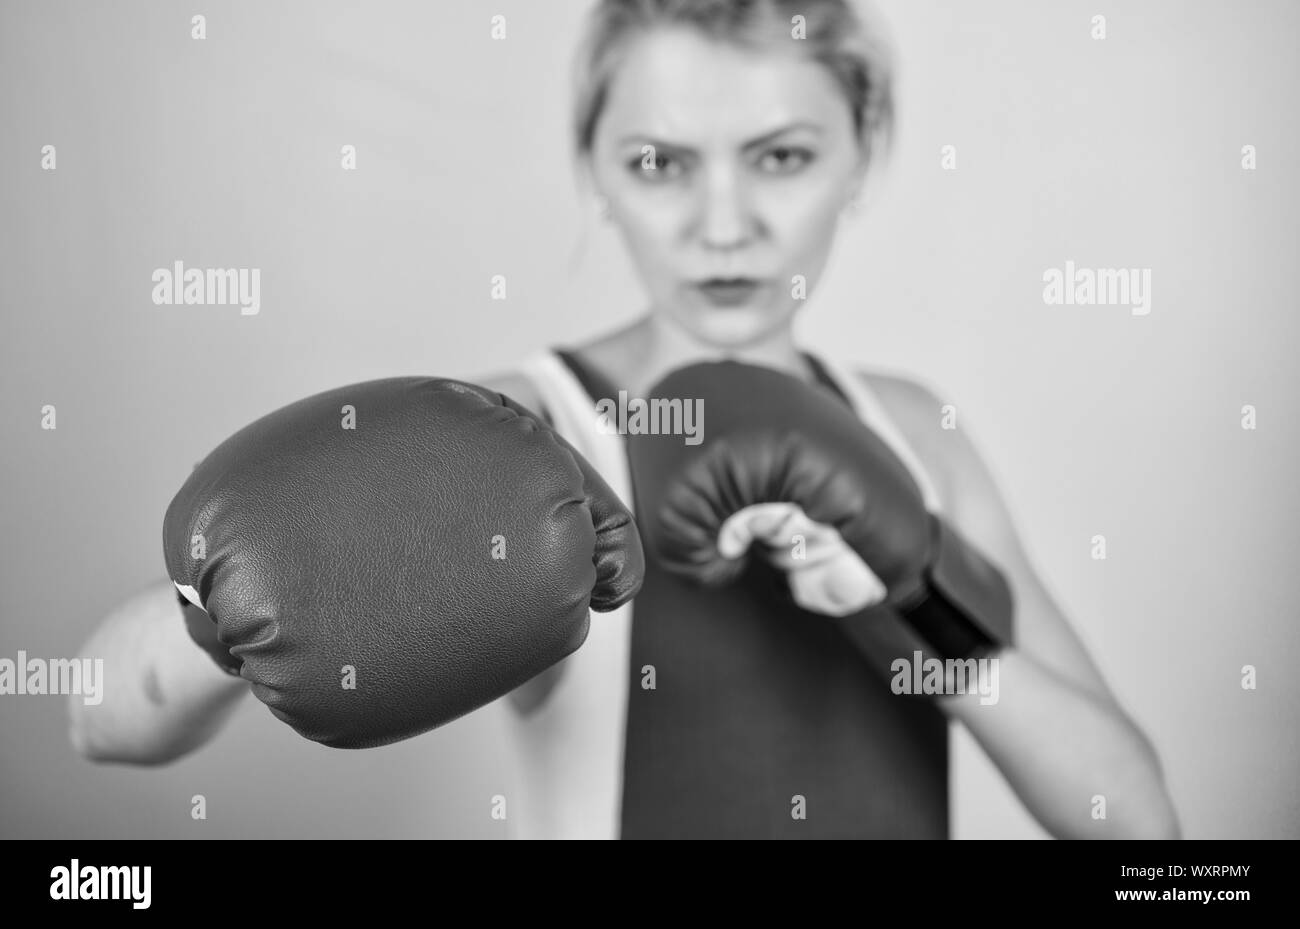 Auf punch konzentriert. Frau Boxhandschuhe auf Angriff konzentriert. Ehrgeizige Mädchen Kampf von Boxhandschuhen. Weibliche Rechte. Ich bin Gonna Kick sie aus. Zuversichtlich in ihre Boxen skill. Boxing Temper verbessert werden. Stockfoto